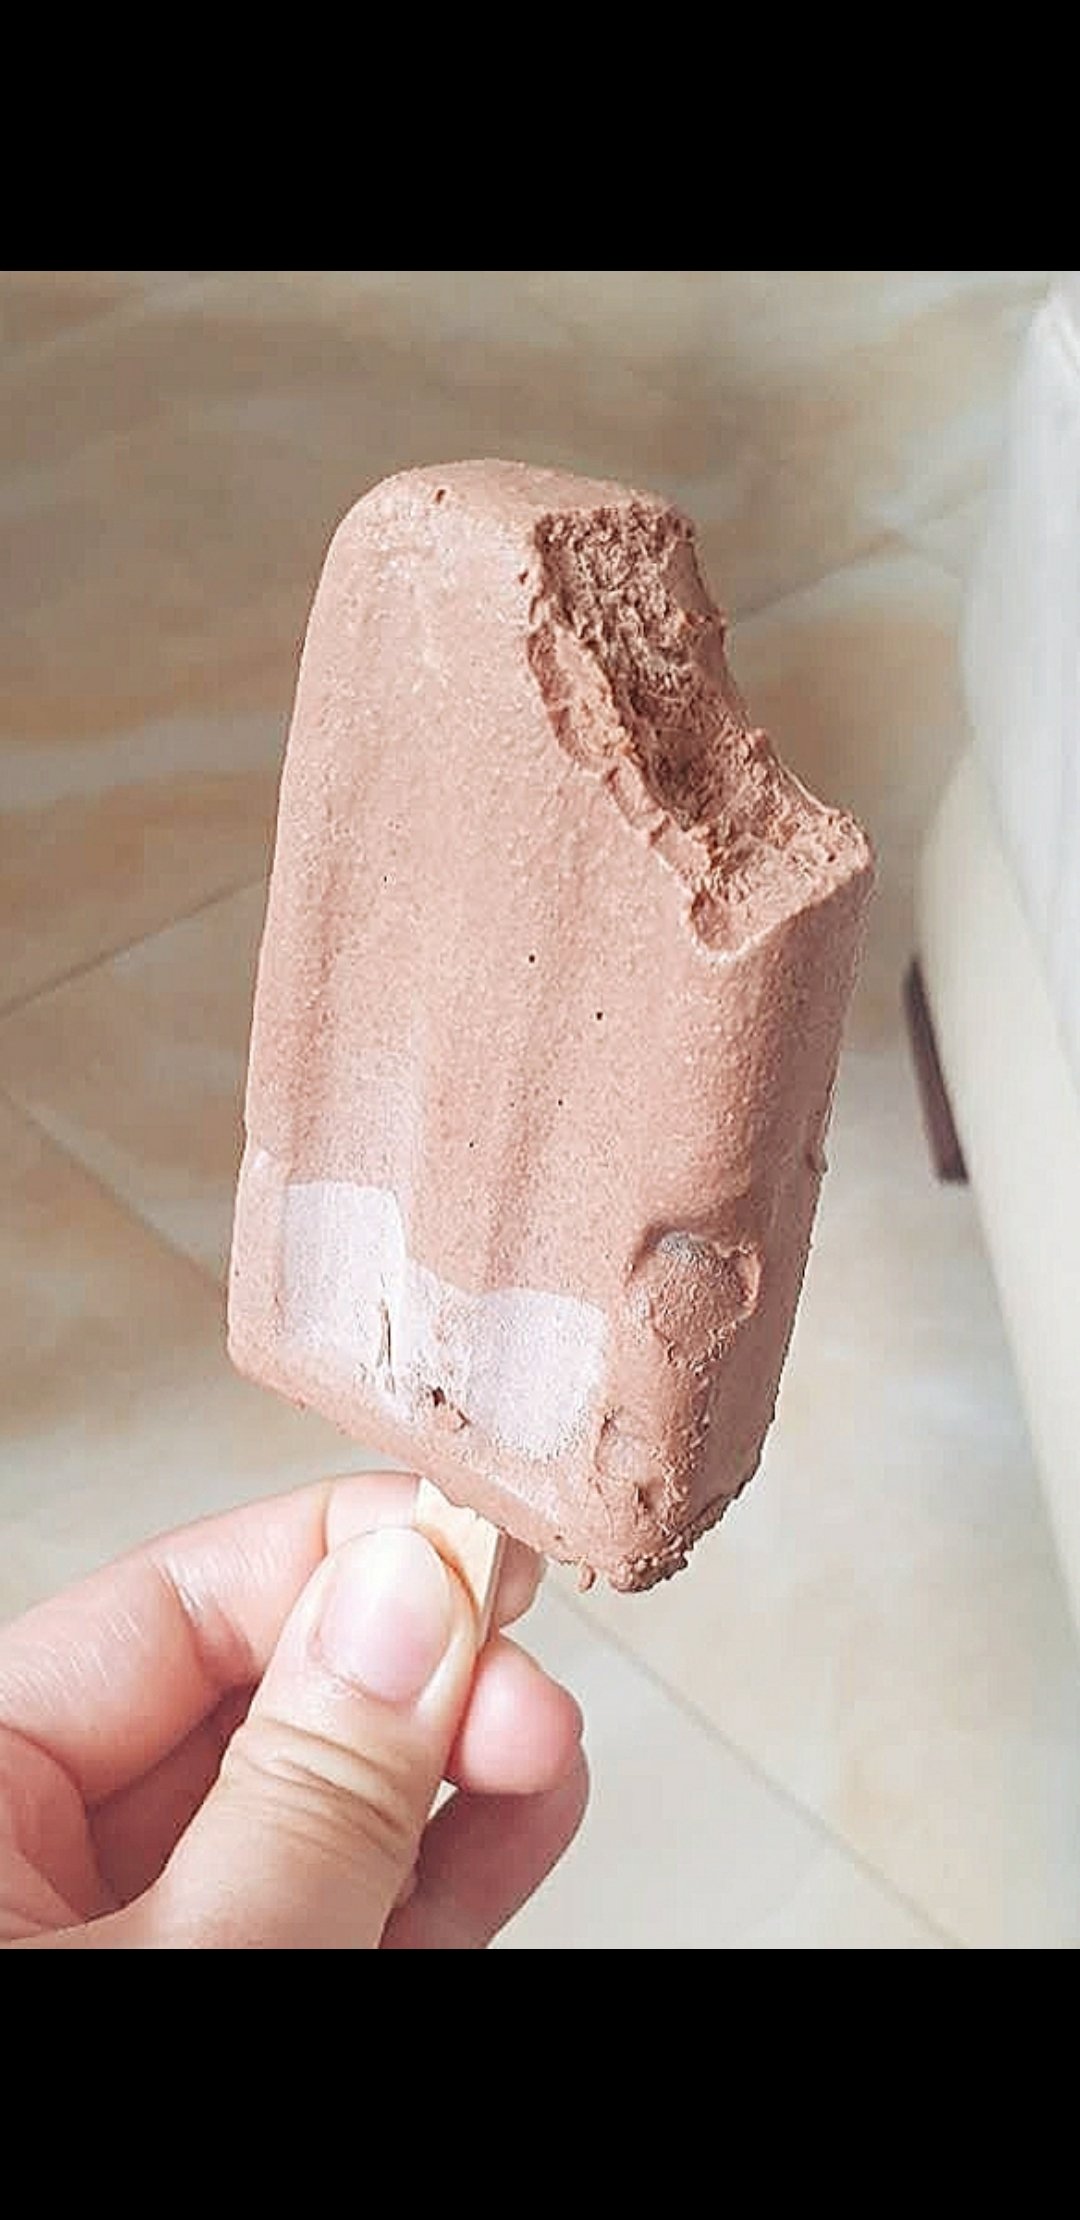 超浓郁巧克力冰淇淋--详细教程